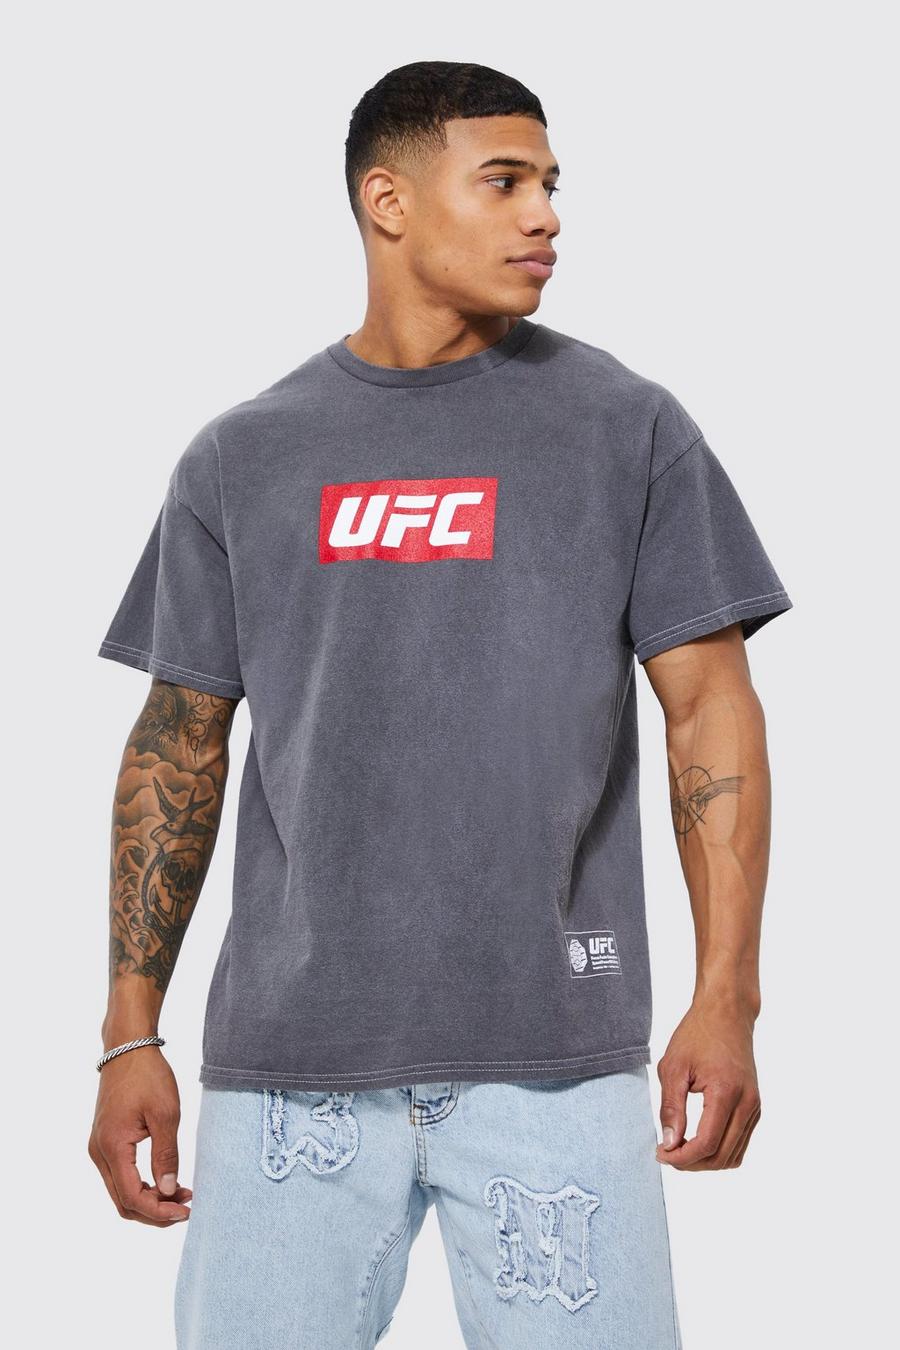 Charcoal Gebleekt Gelicenseerd UFC T-Shirt